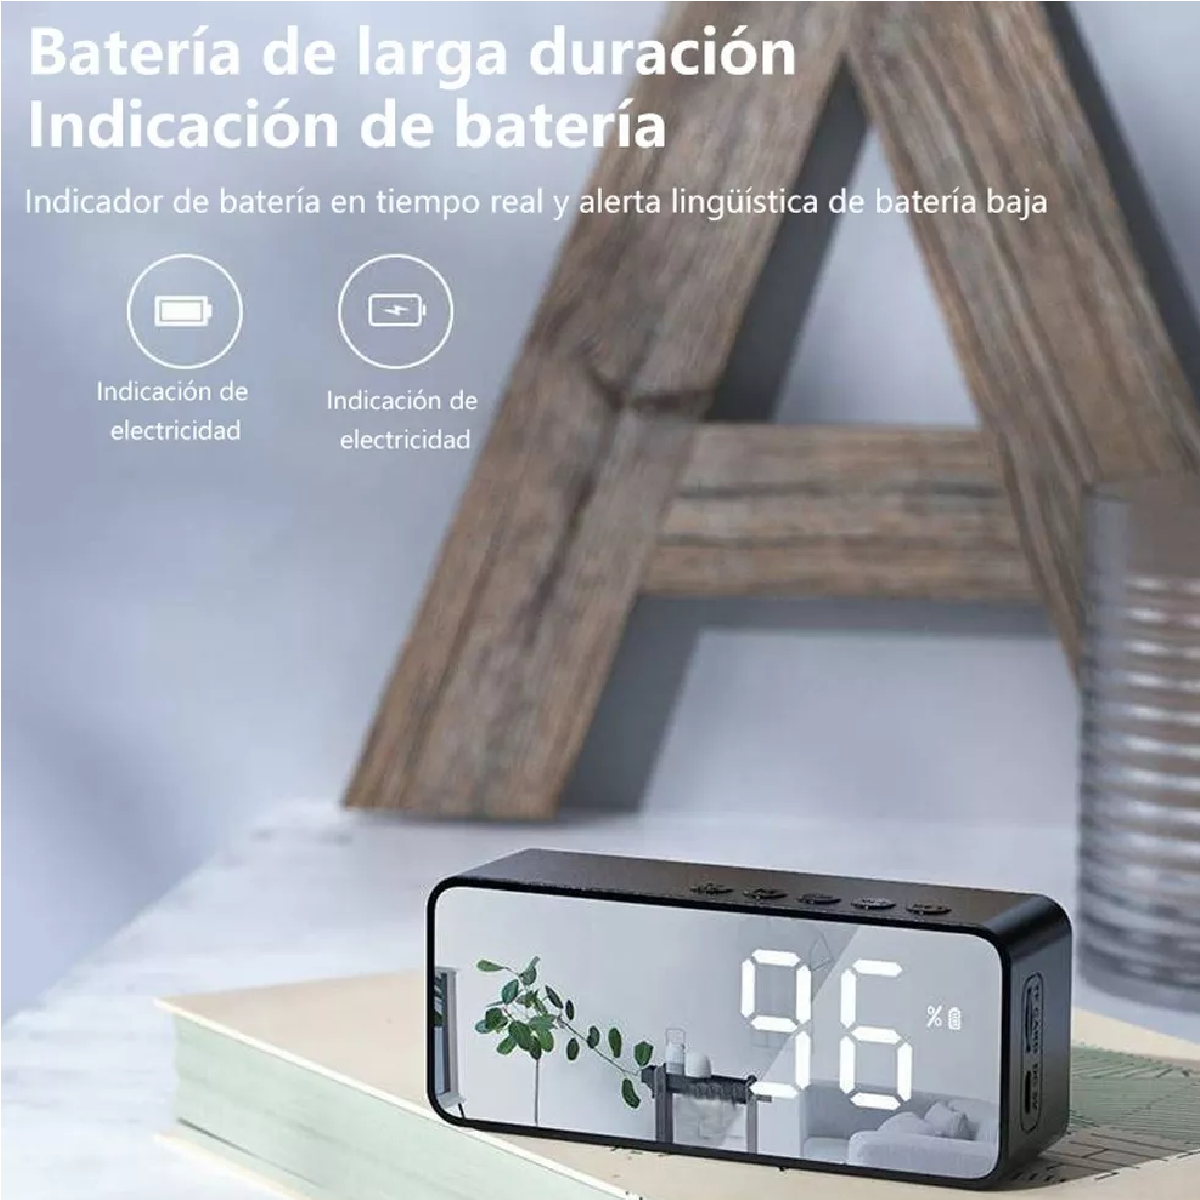 Reloj Despertador Digital Bocina Bluetooth Y Radio Fm Negro